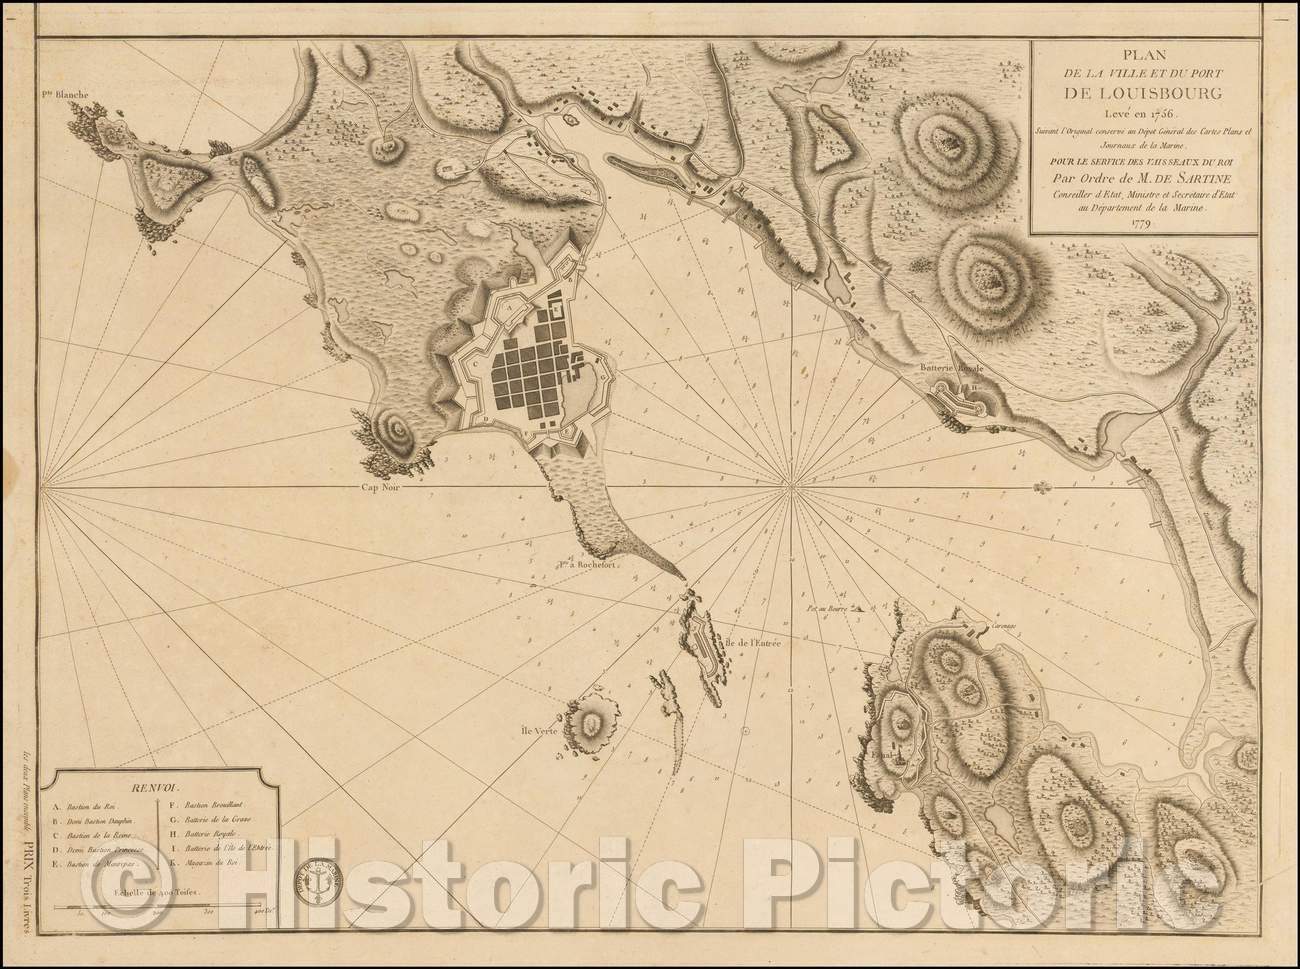 Historic Map - Plan de la Ville et du Port de Louisbourg Leve en 1756 Suivant l'Original, 1779 - Vintage Wall Art